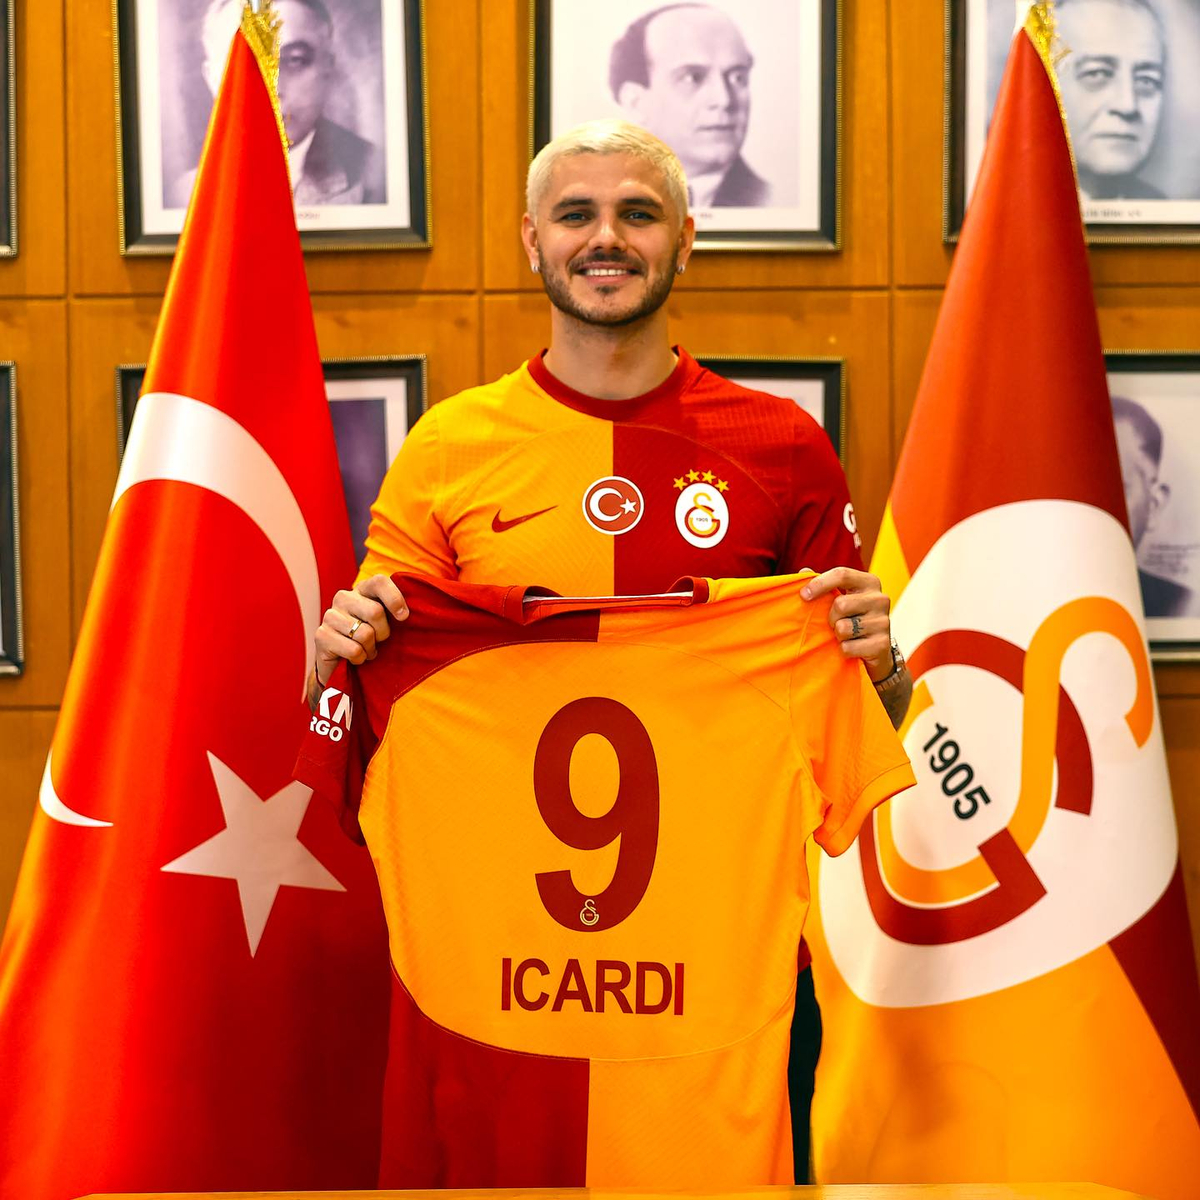 Officiellement, Icardi est transféré à Galatasaray 